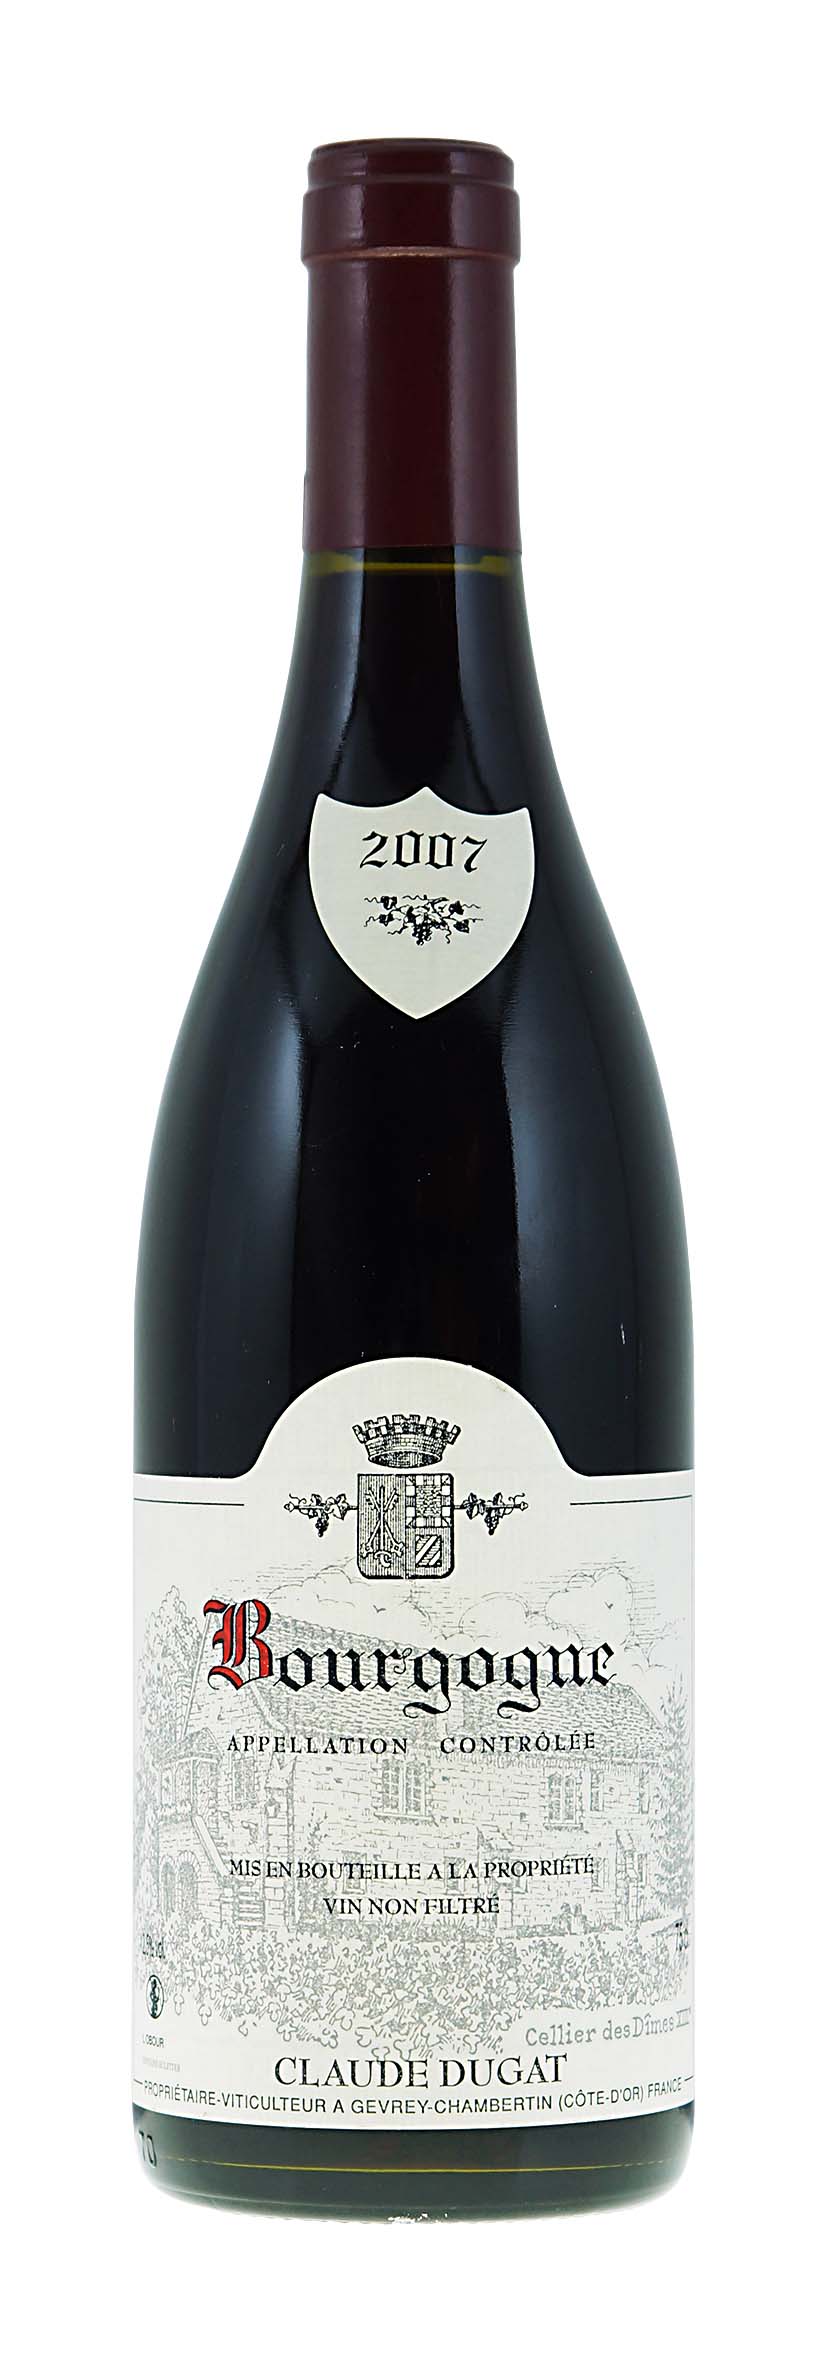 Bourgogne AOC 2007